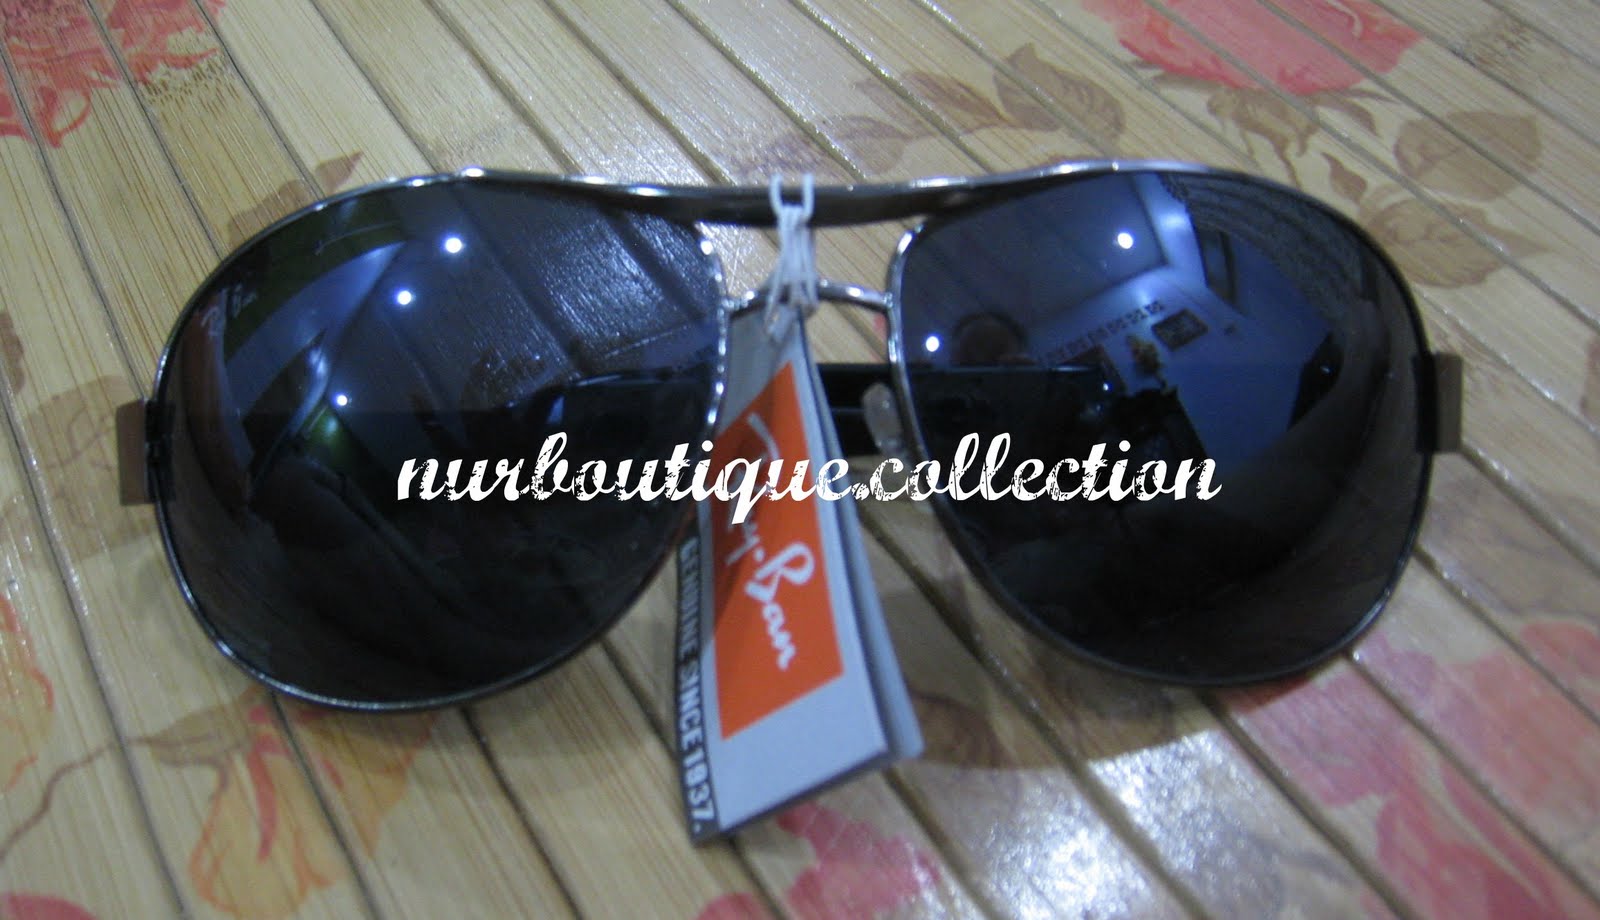 Nurboutique.collection: Sunglasses